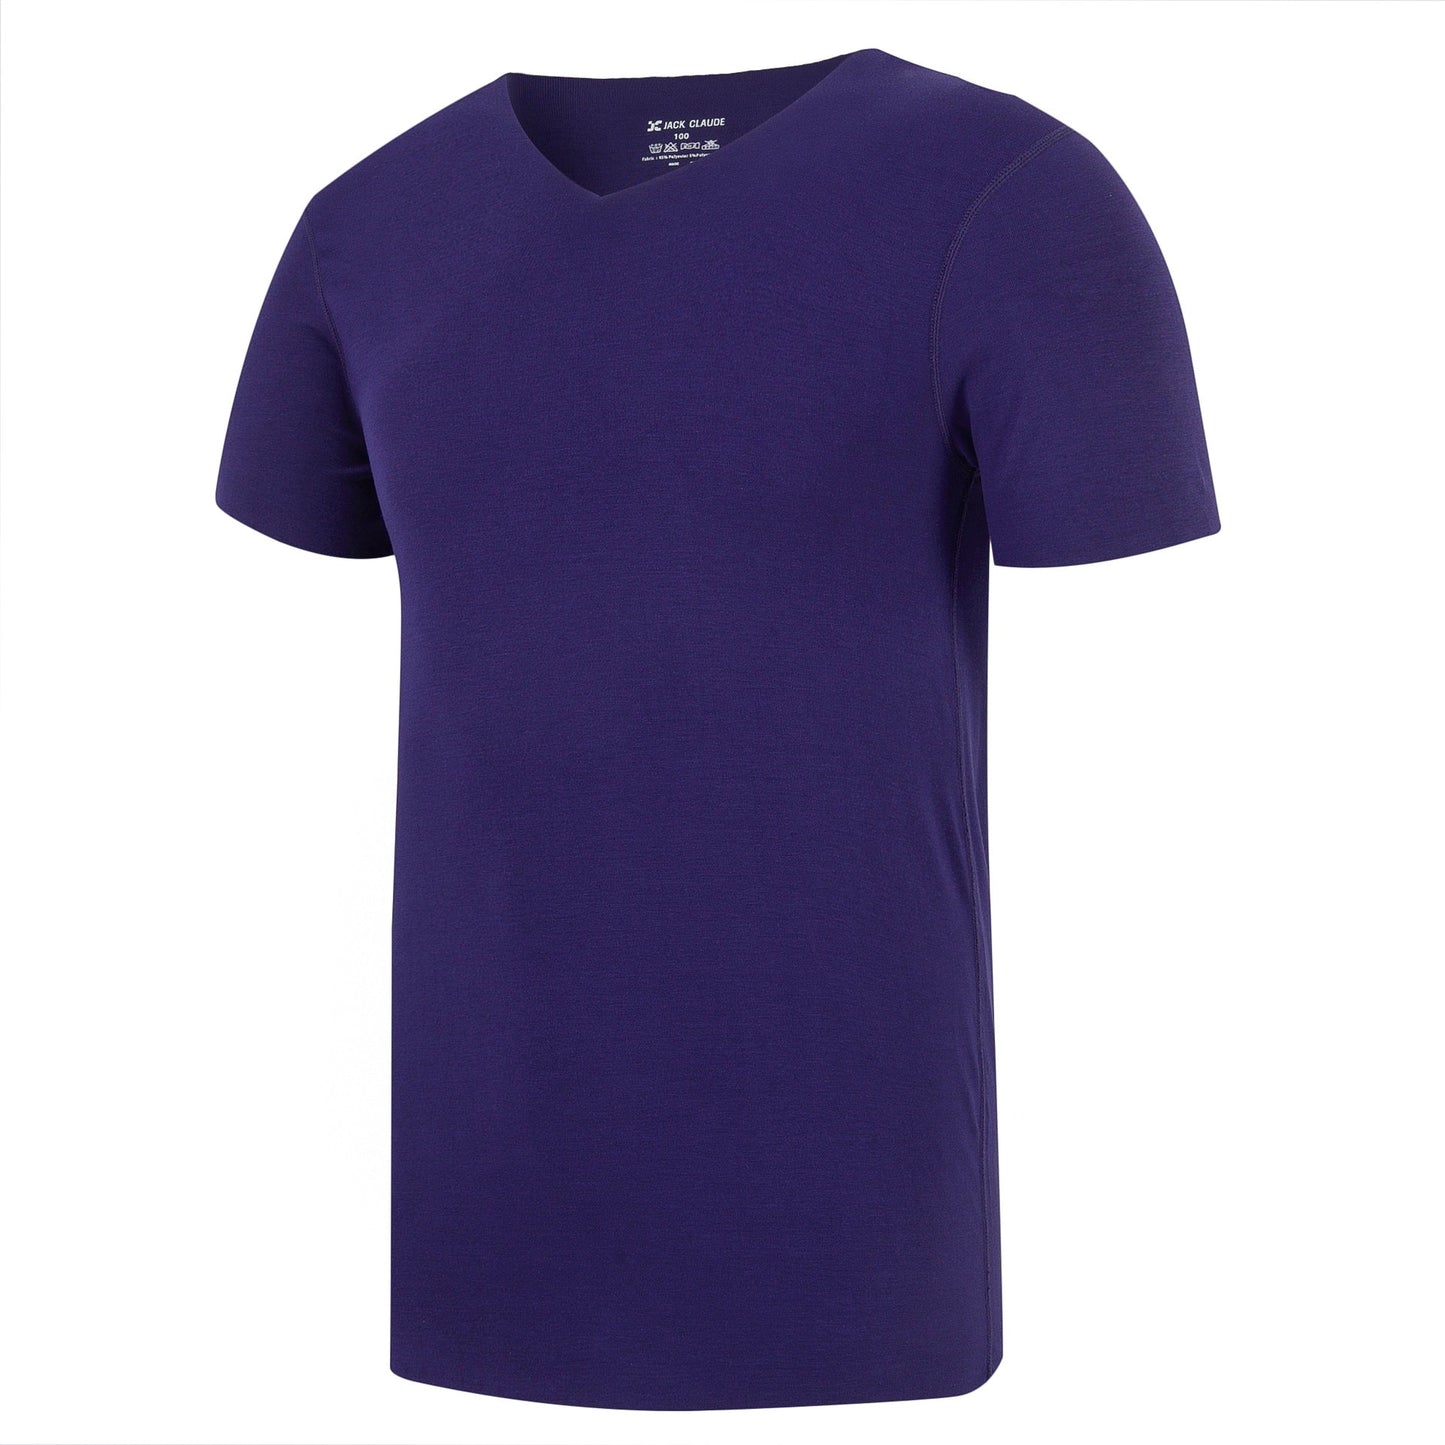 Half-Sleeved Solid Color Plain T-Shirt | GlamzLife